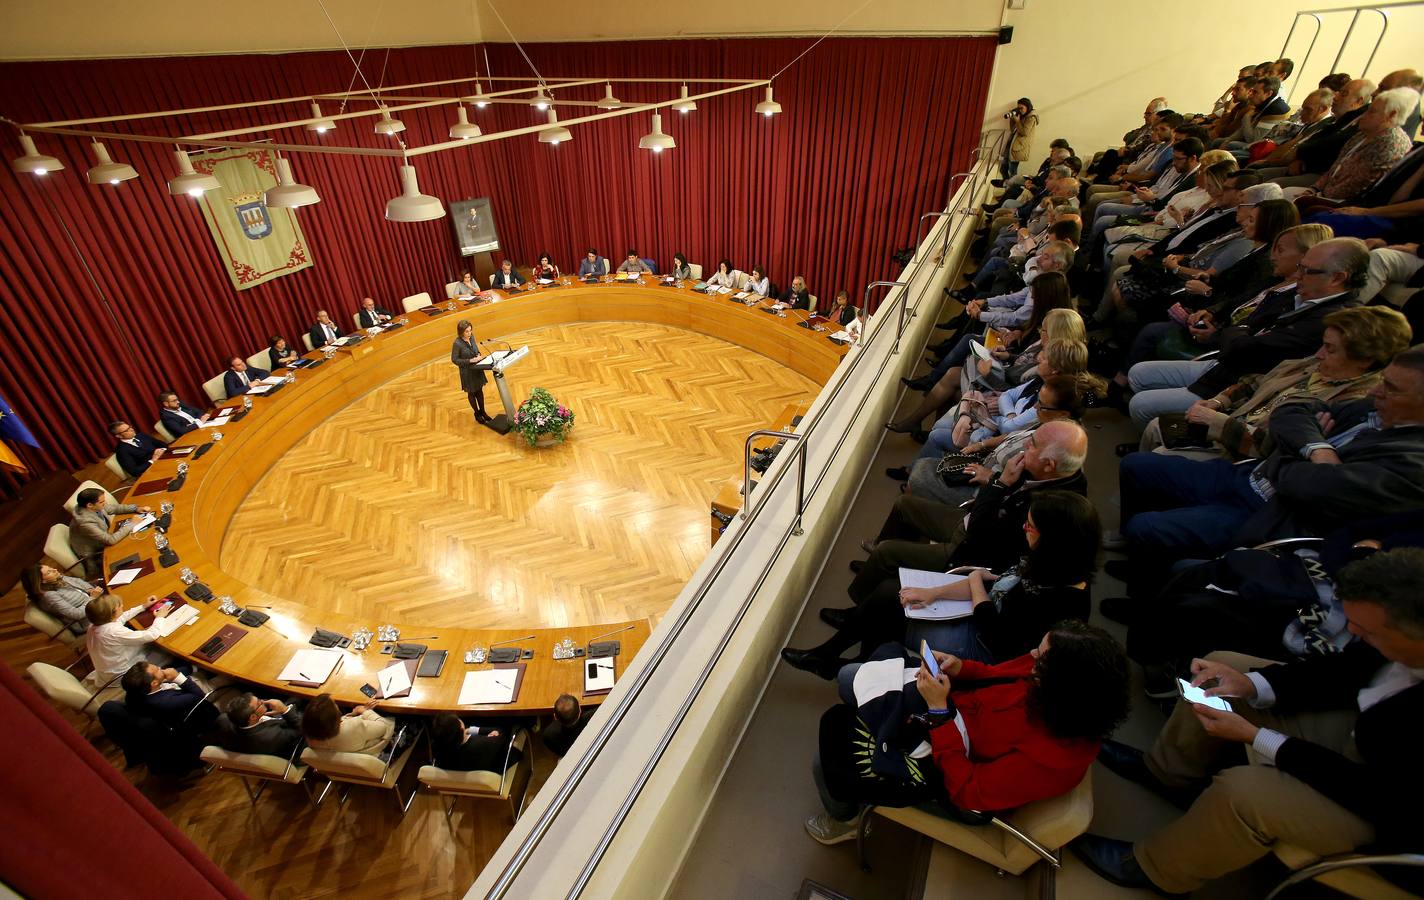 La alcaldesa de Logroño ha protagonizado la primera sesión del Debate del estado de la ciudad.